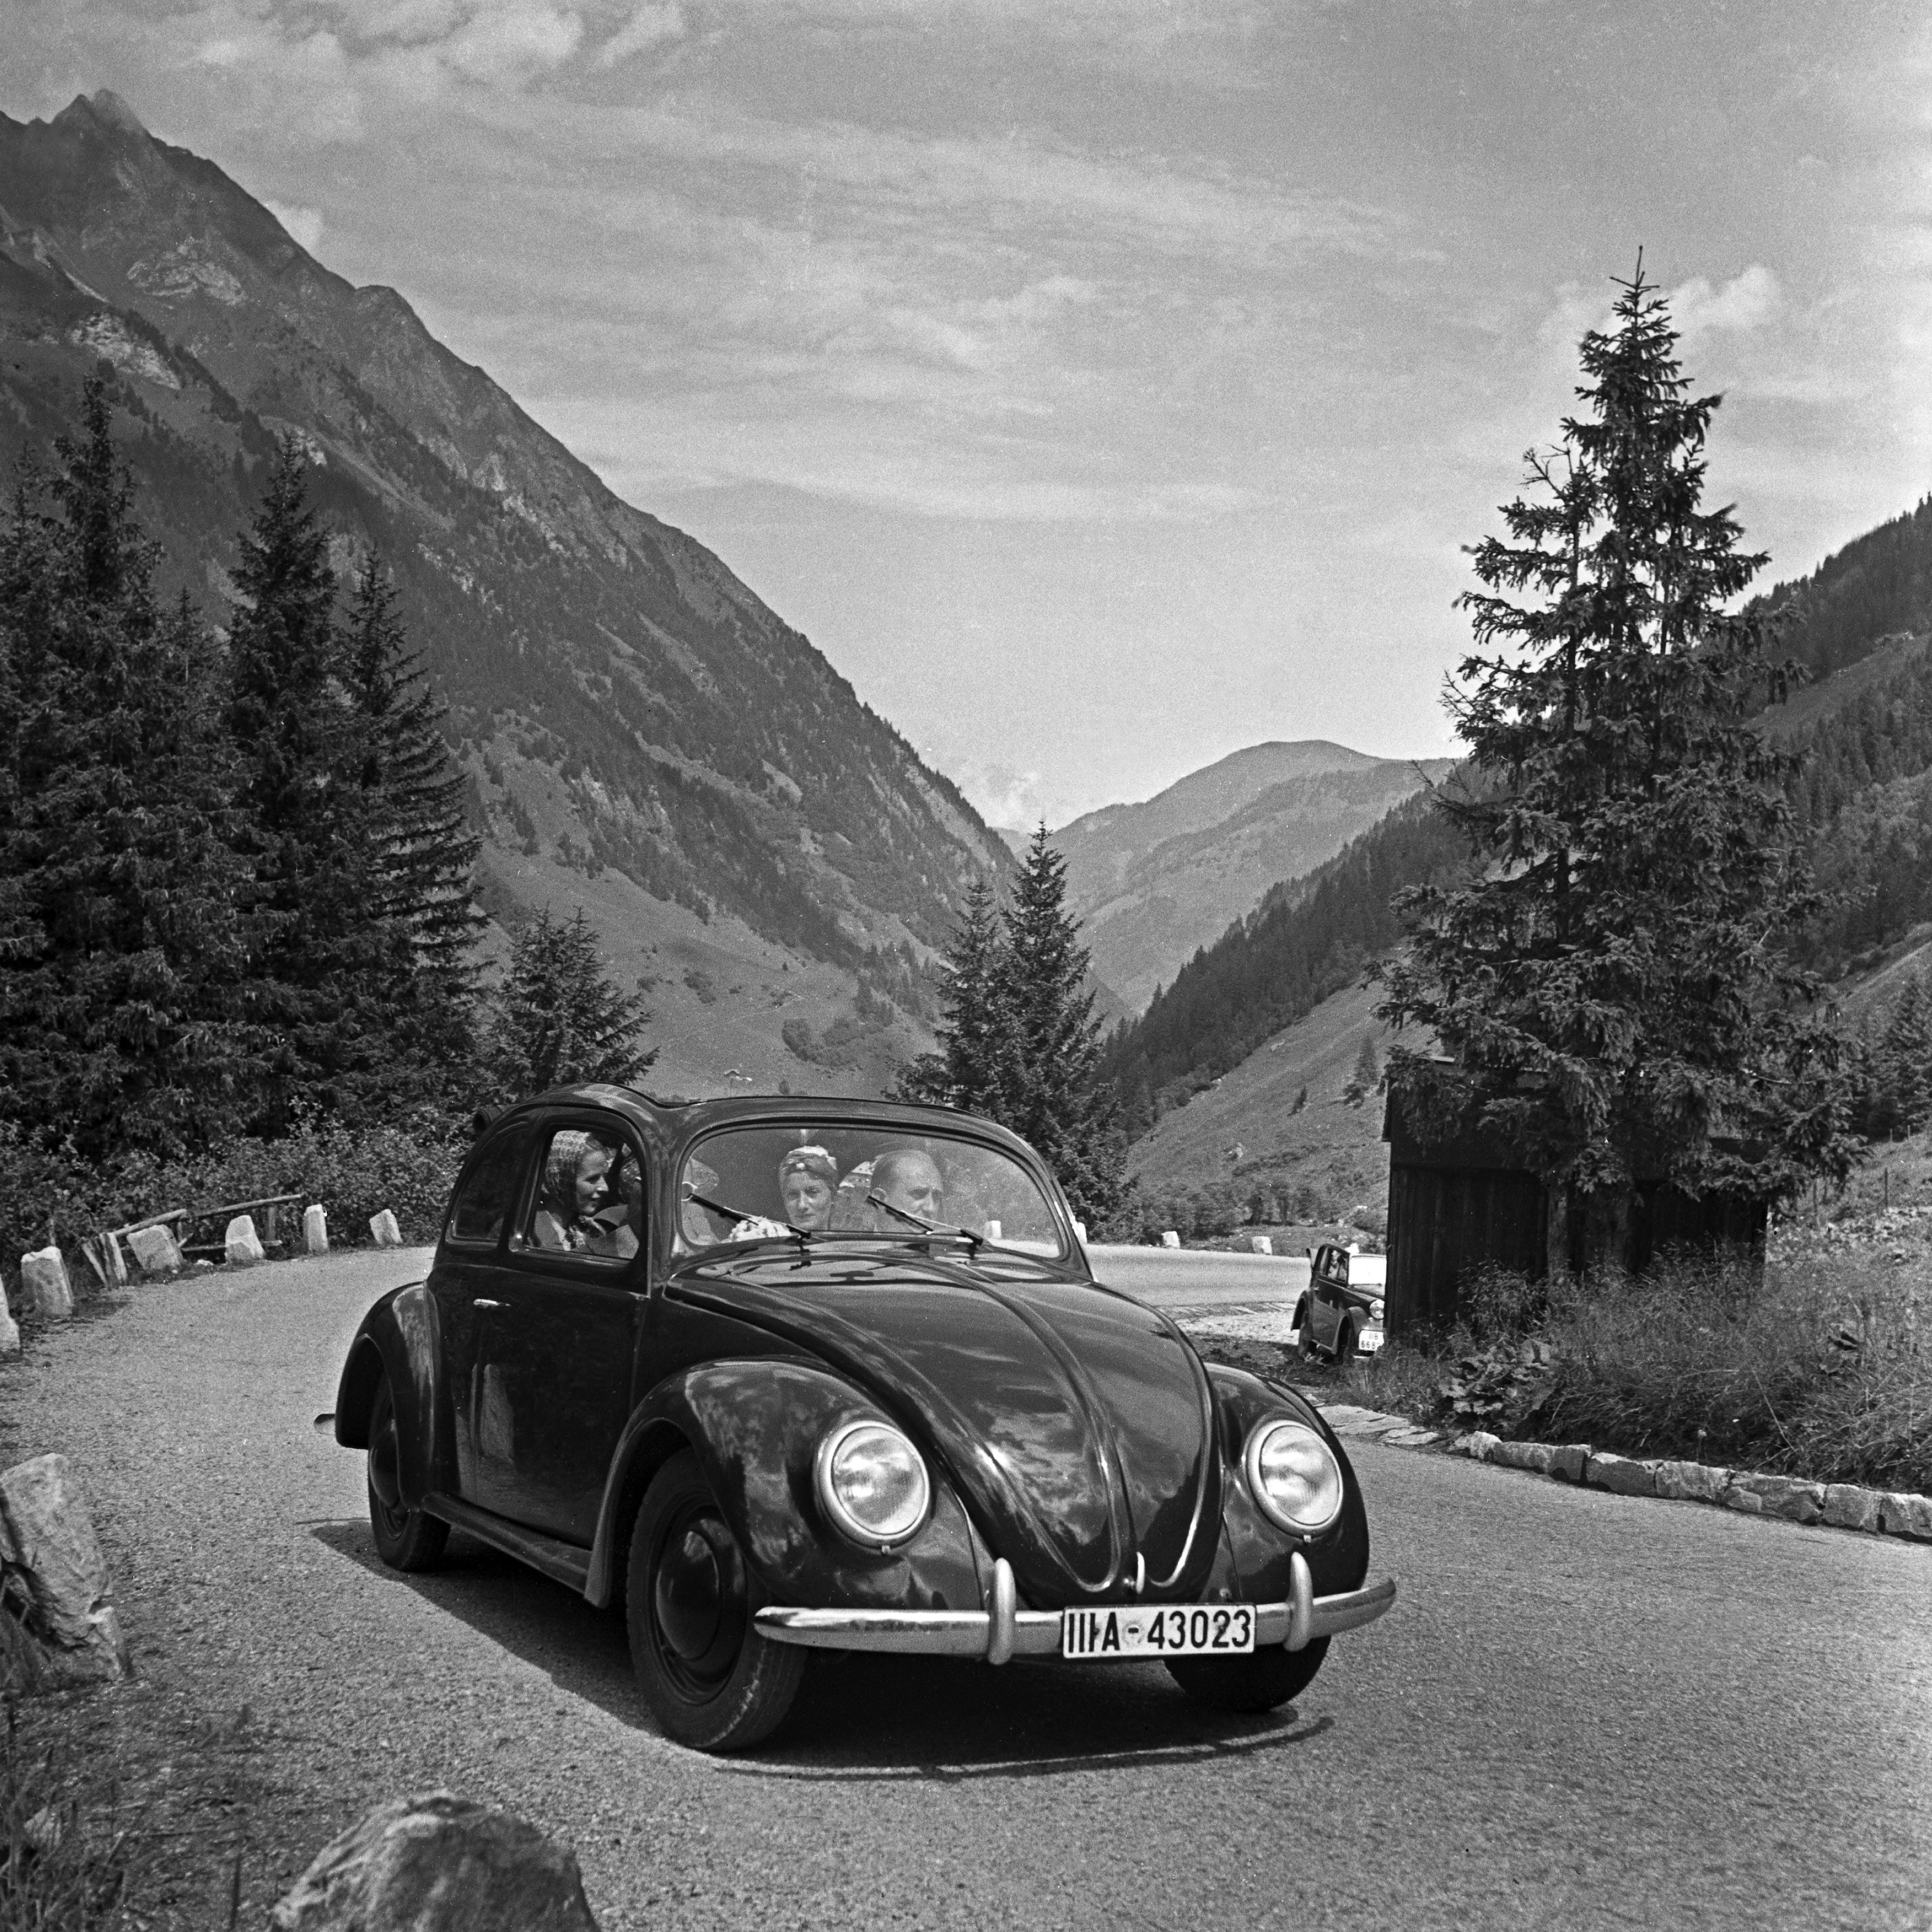 Black and White Photograph Karl Heinrich Lämmel - Exploration de la campagne dans un scarabée de Volkswagen, Allemagne, 1939 Imprimé plus tard